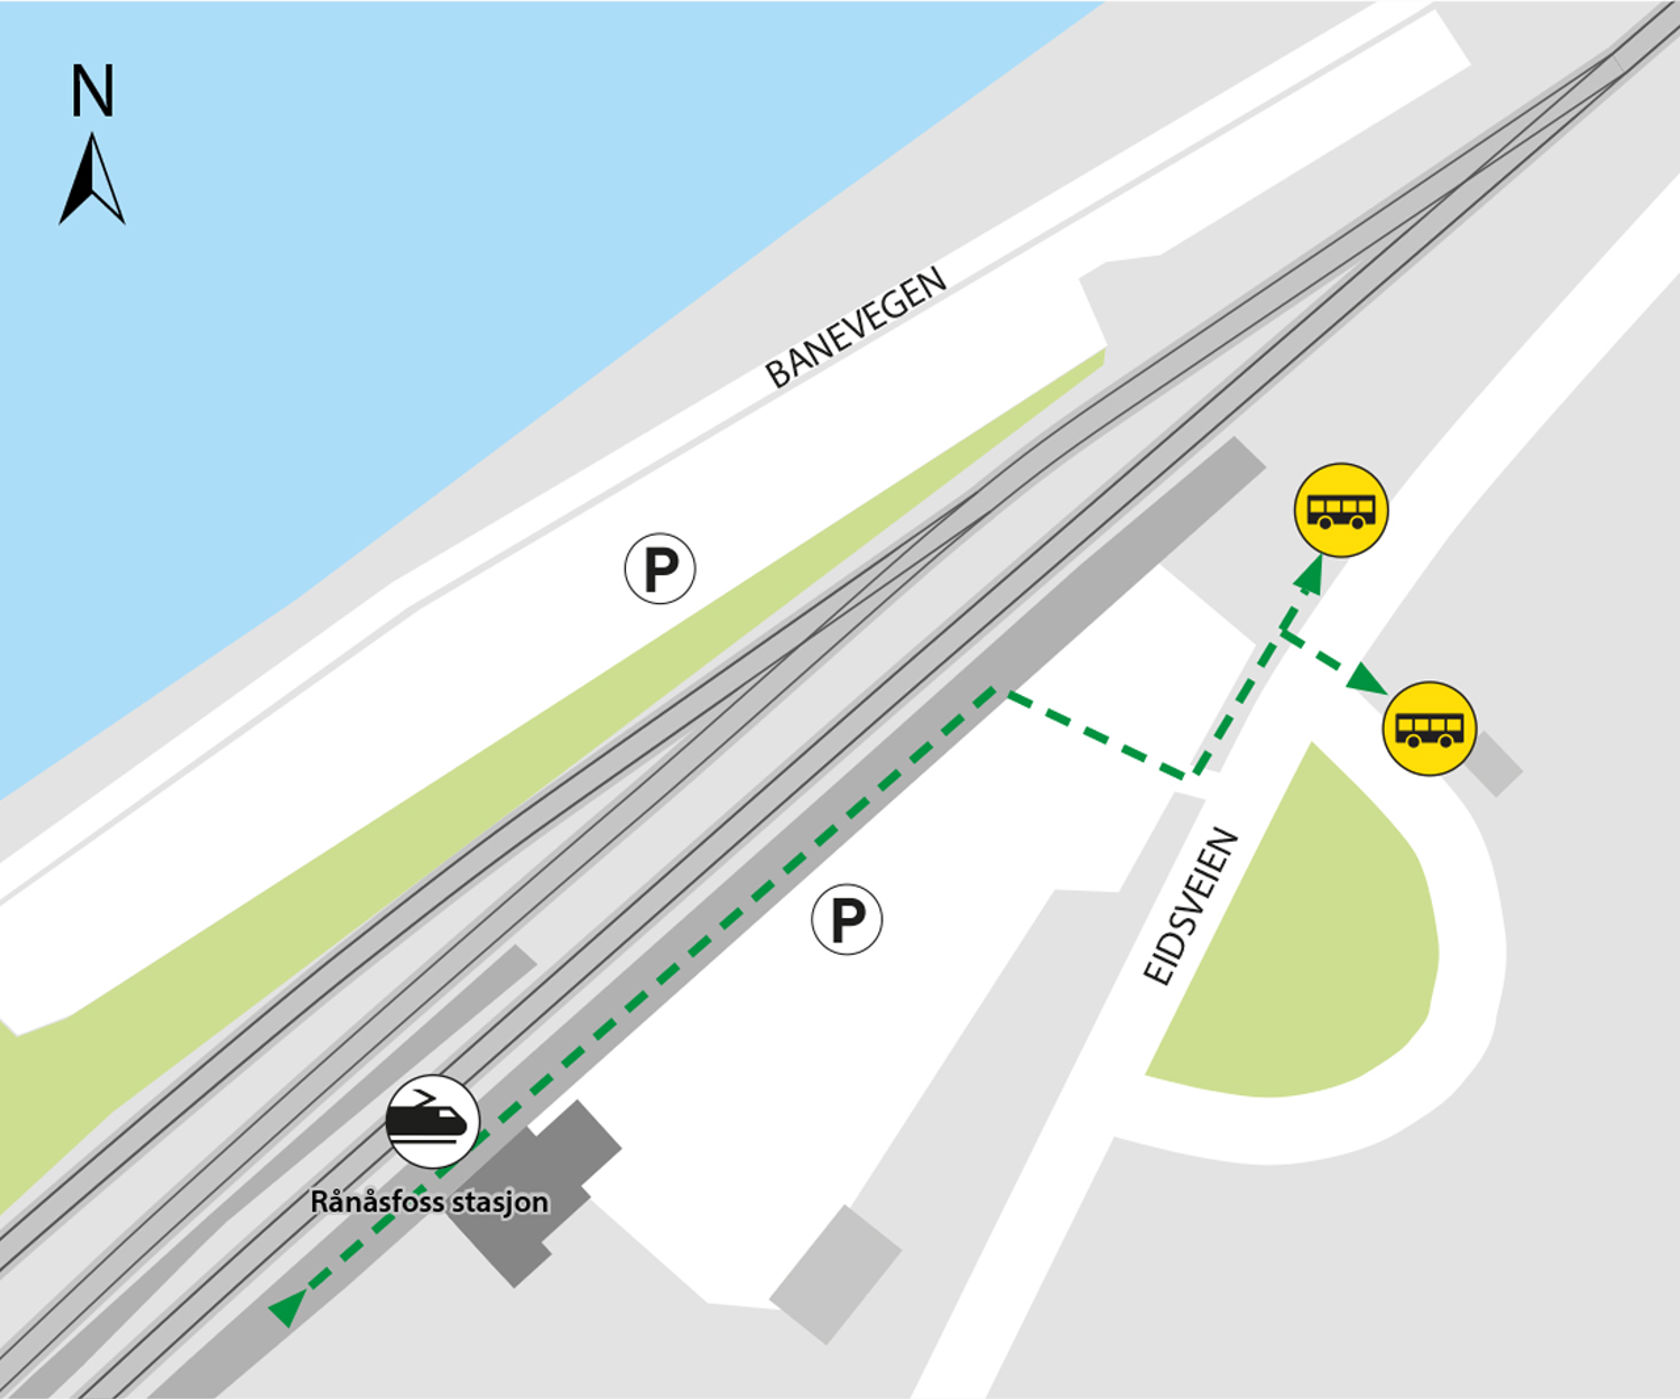 Kartet viser at Bussene kjører fra bussholdeplassene Rånåsfoss stasjon. 